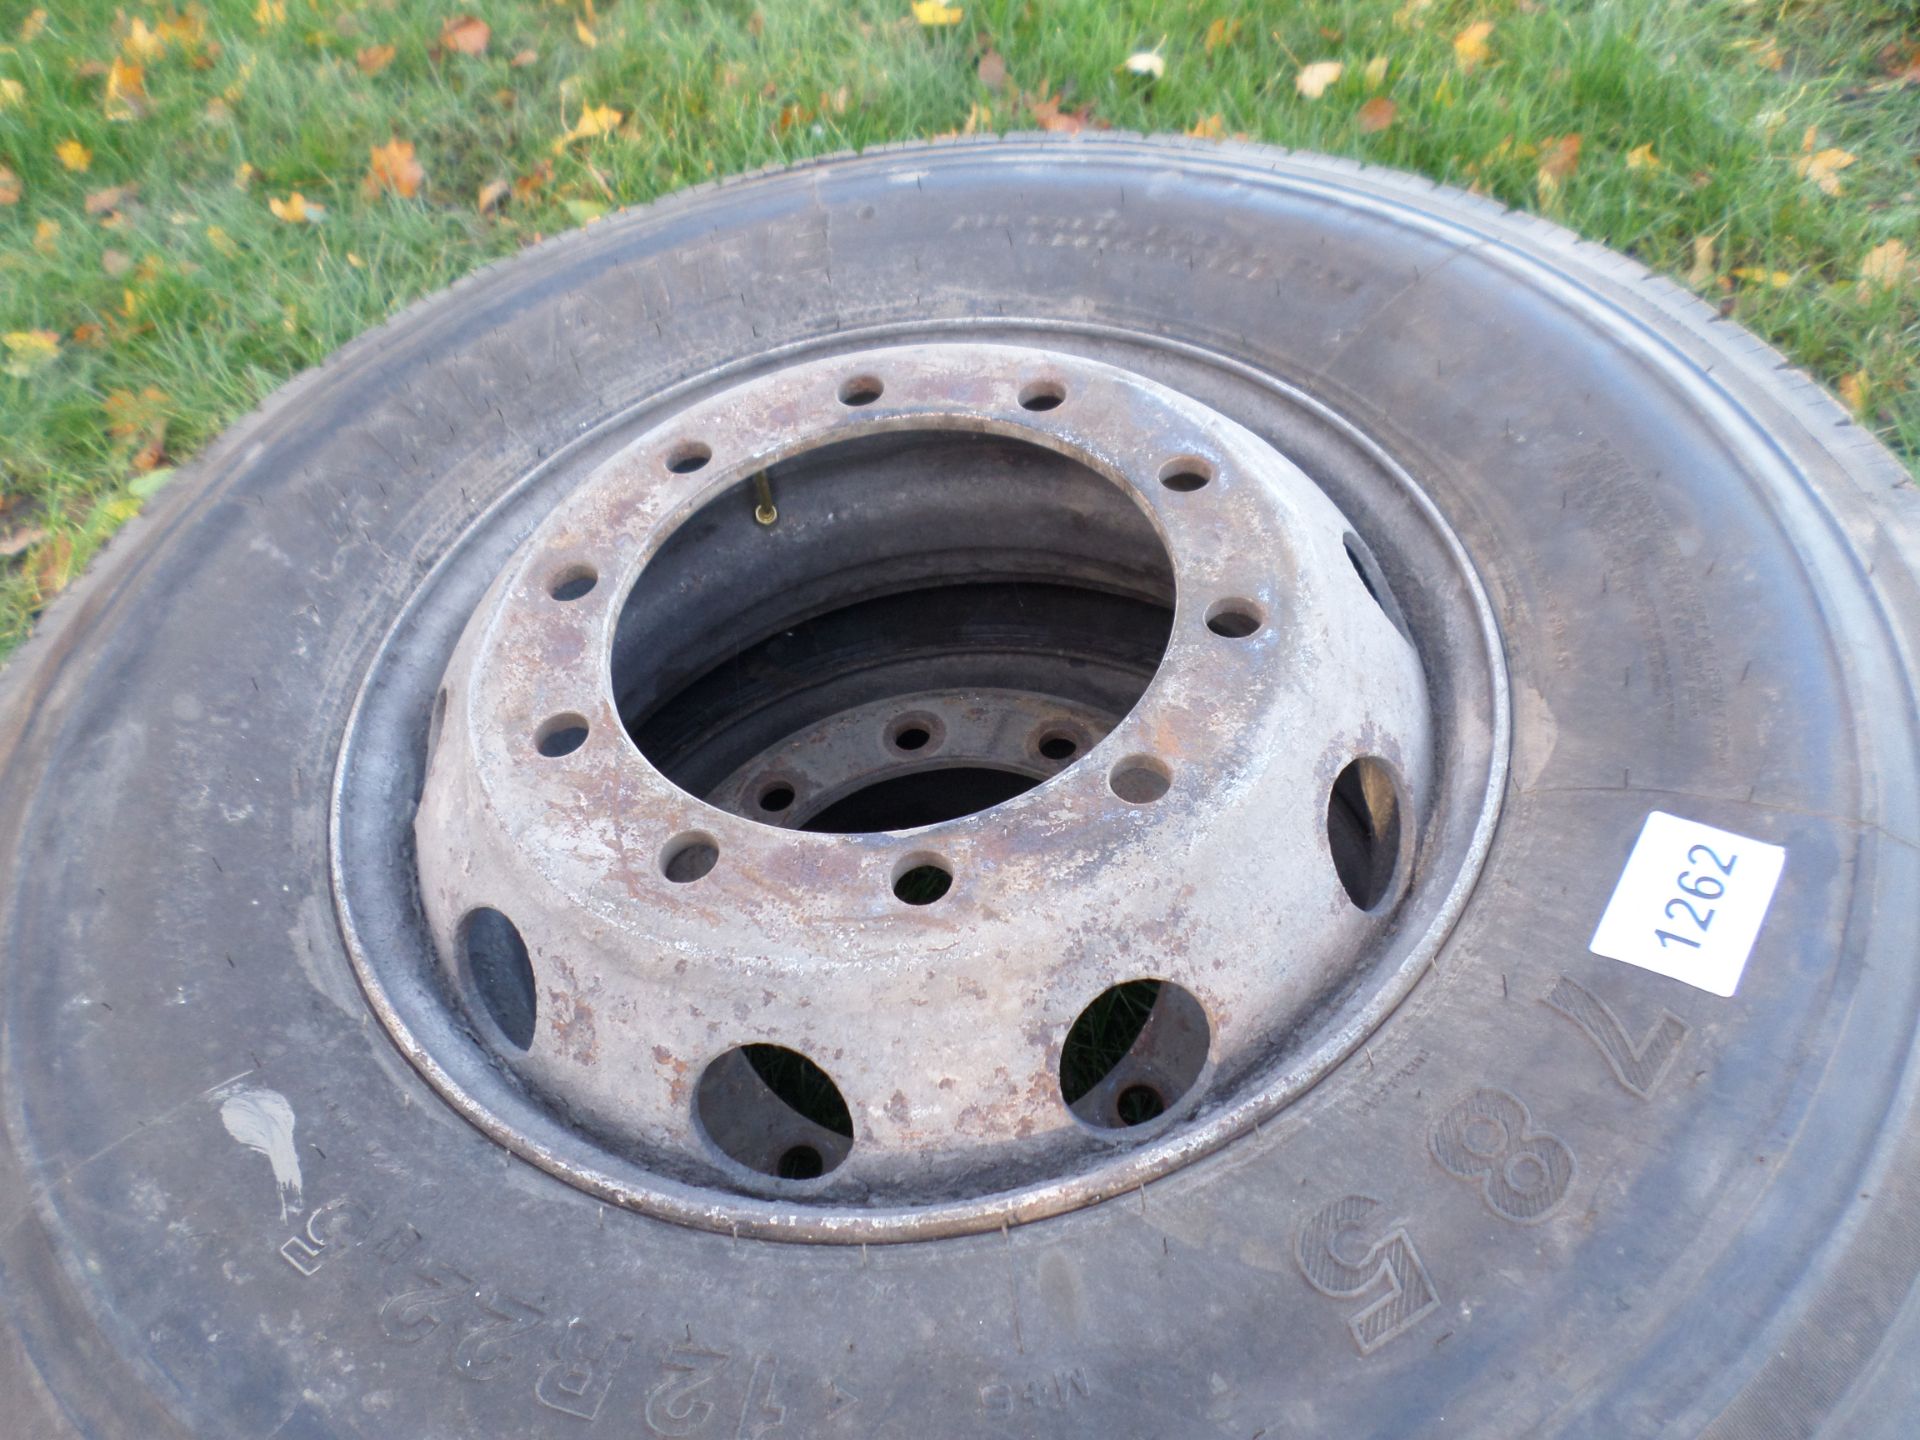 2 wheels/tyres 12/22.5 NO VAT - Image 2 of 2